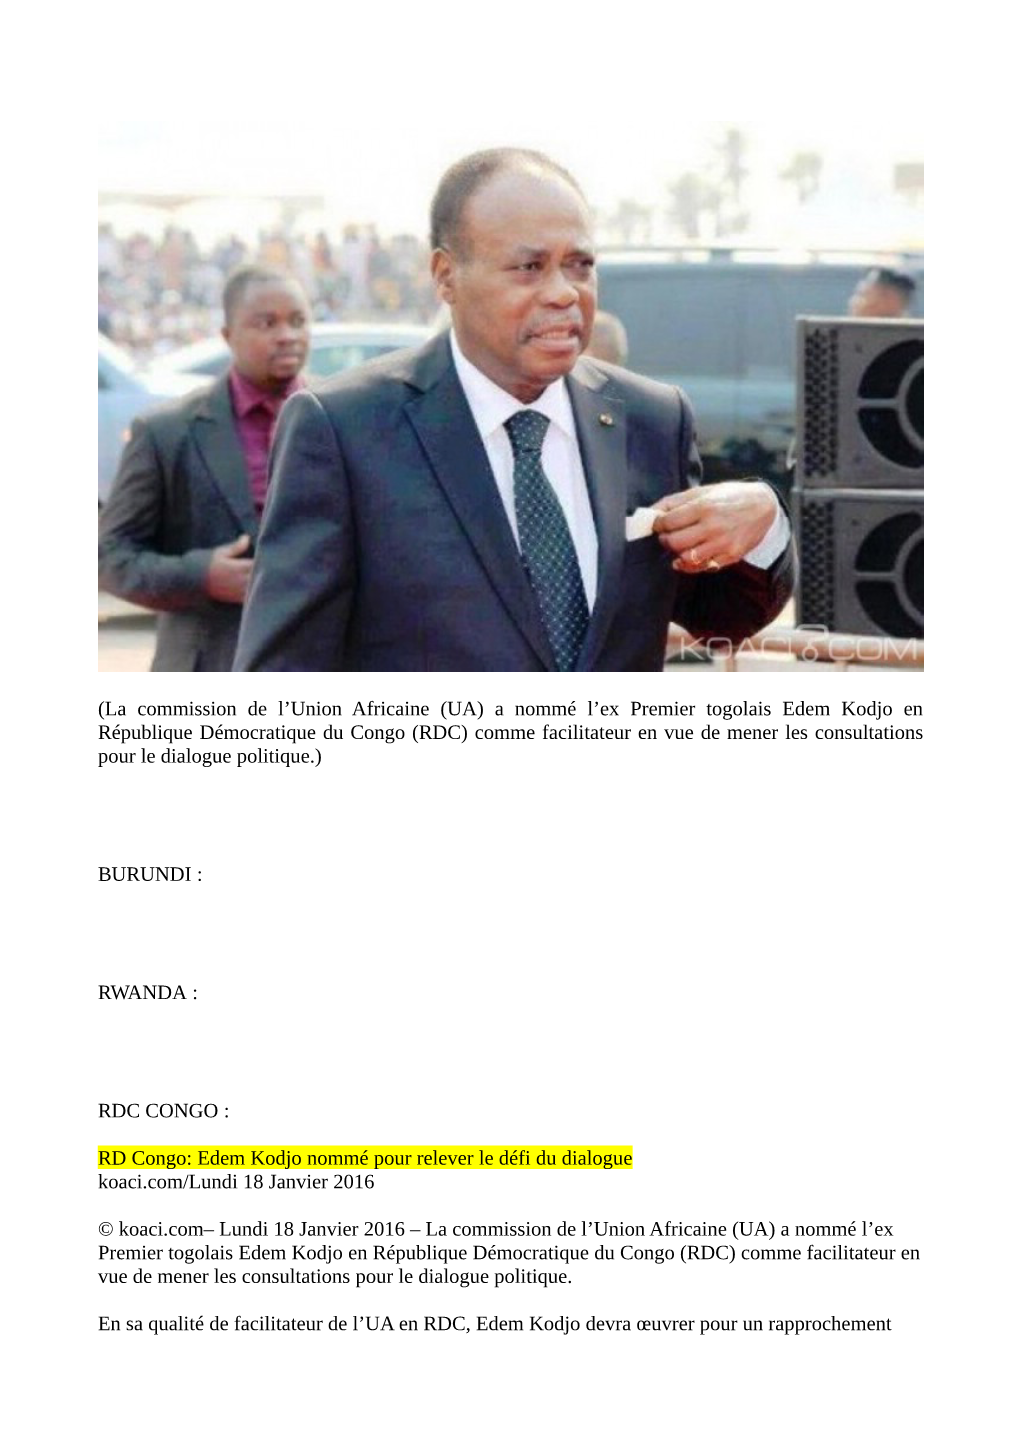 (La Commission De L'union Africaine (UA) a Nommé L'ex Premier Togolais